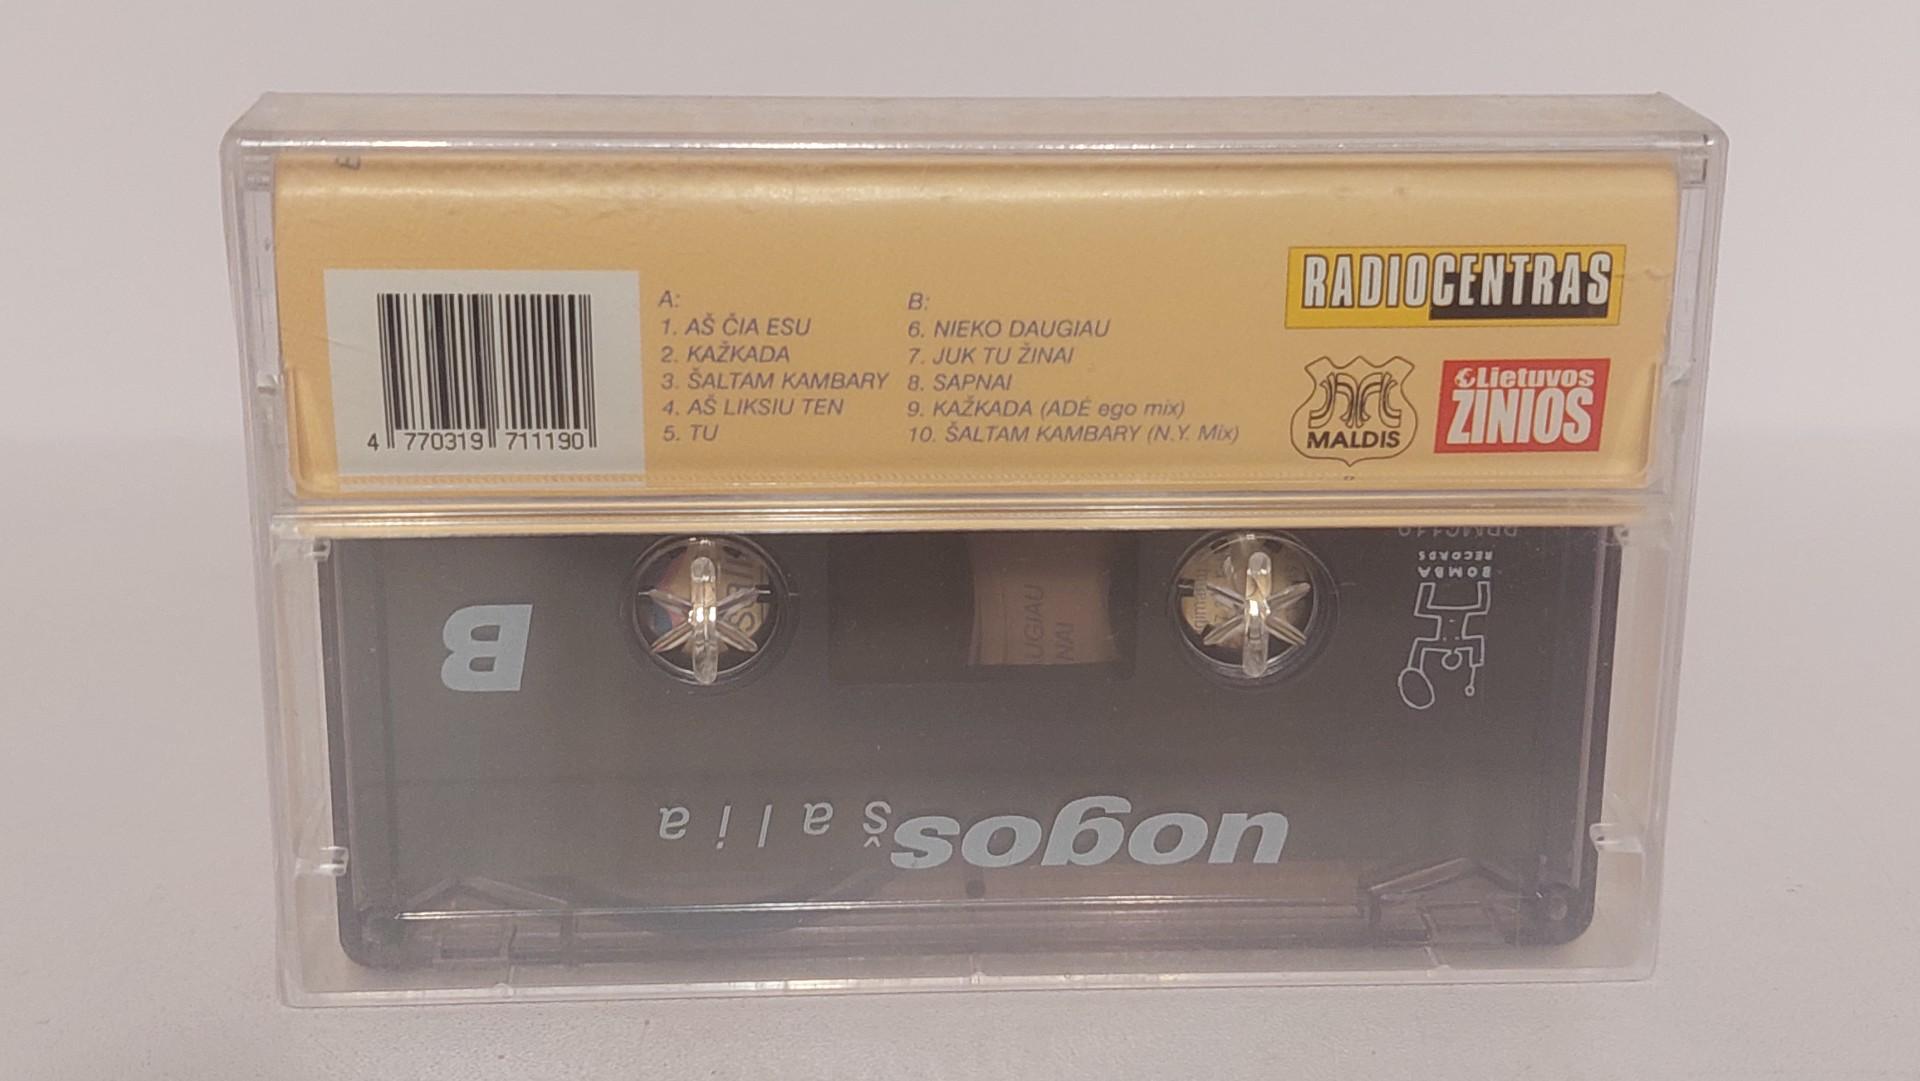 Originali neišpakuota kasetė Uogos - Šalia